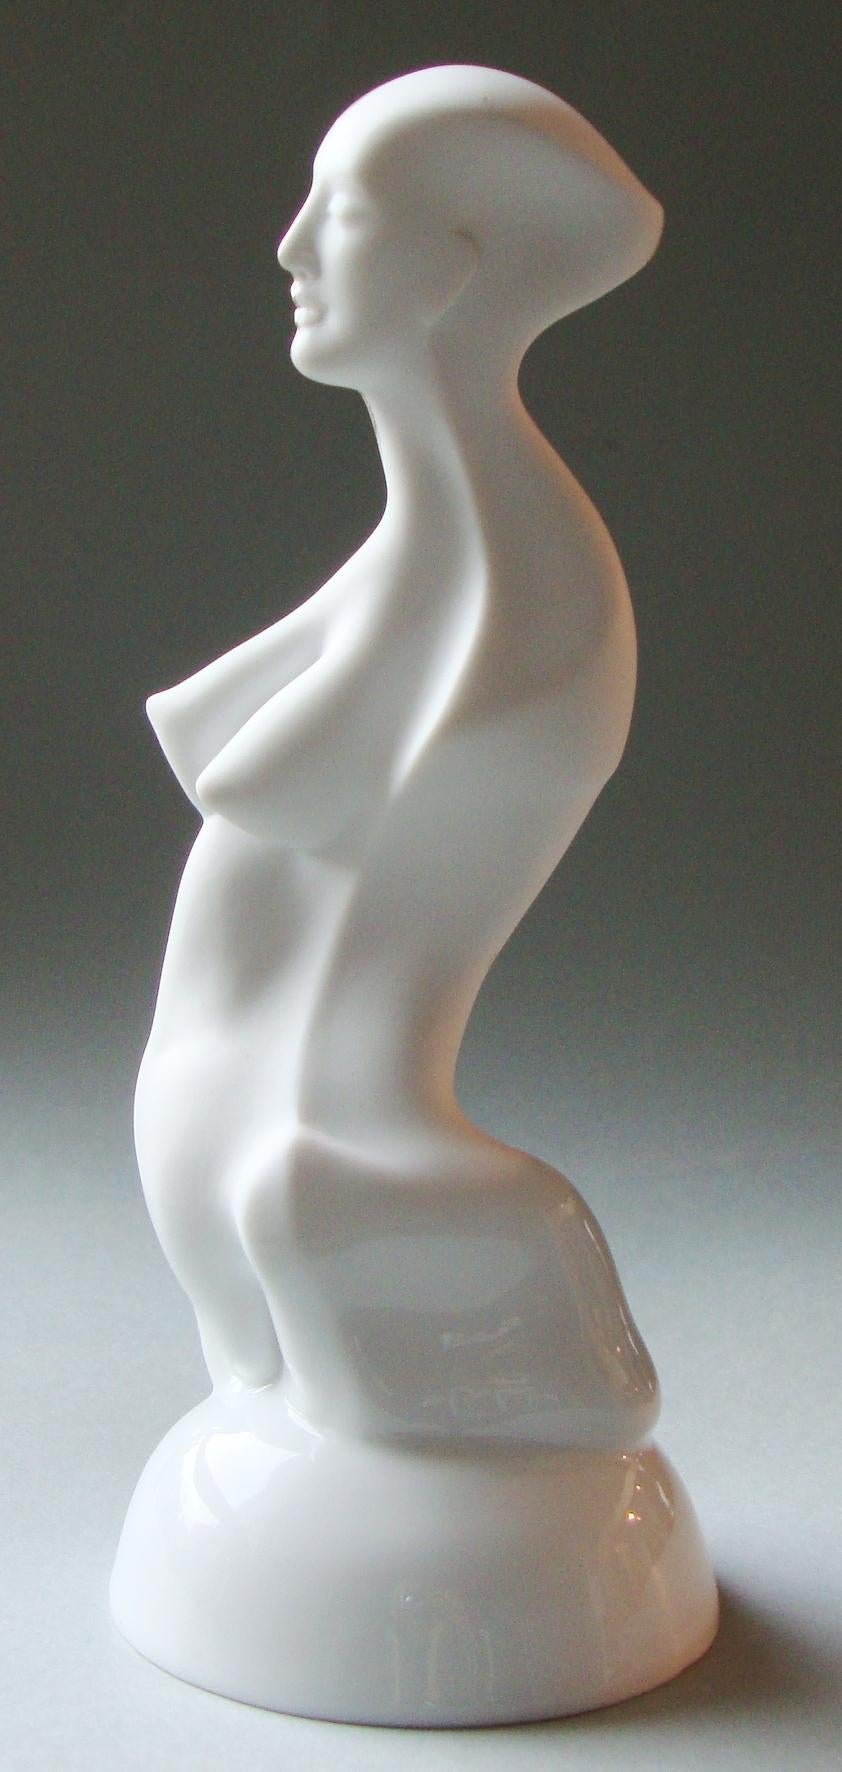 Frauenfigur auf einem Podest  Porzellan, Silber, H 20 cm